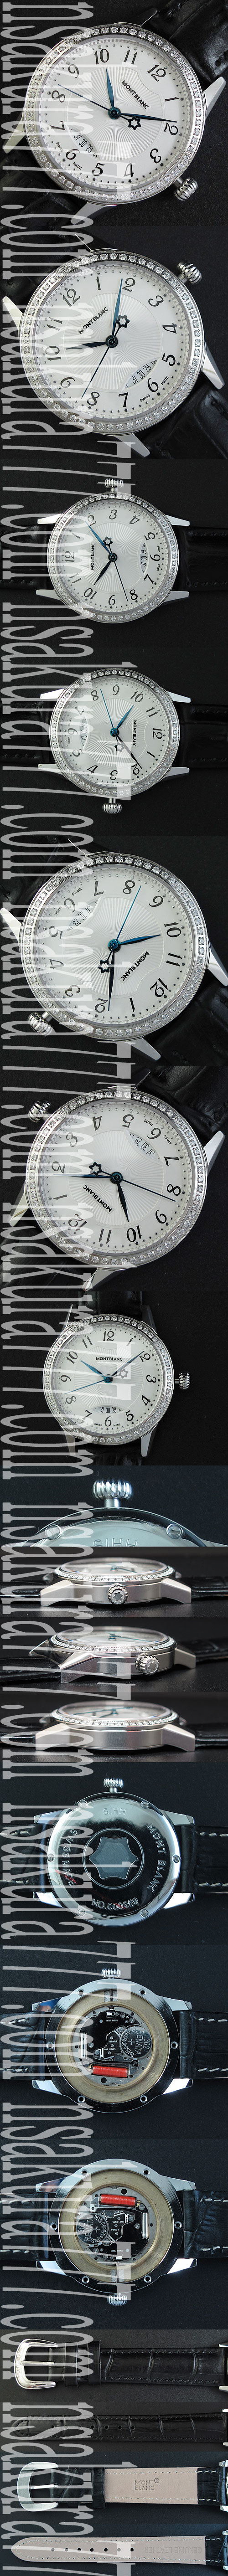 配送料無料 トップ品質モンブラン レディース腕時計 Quartz movement カレンダー表示 全面ダイヤモンド